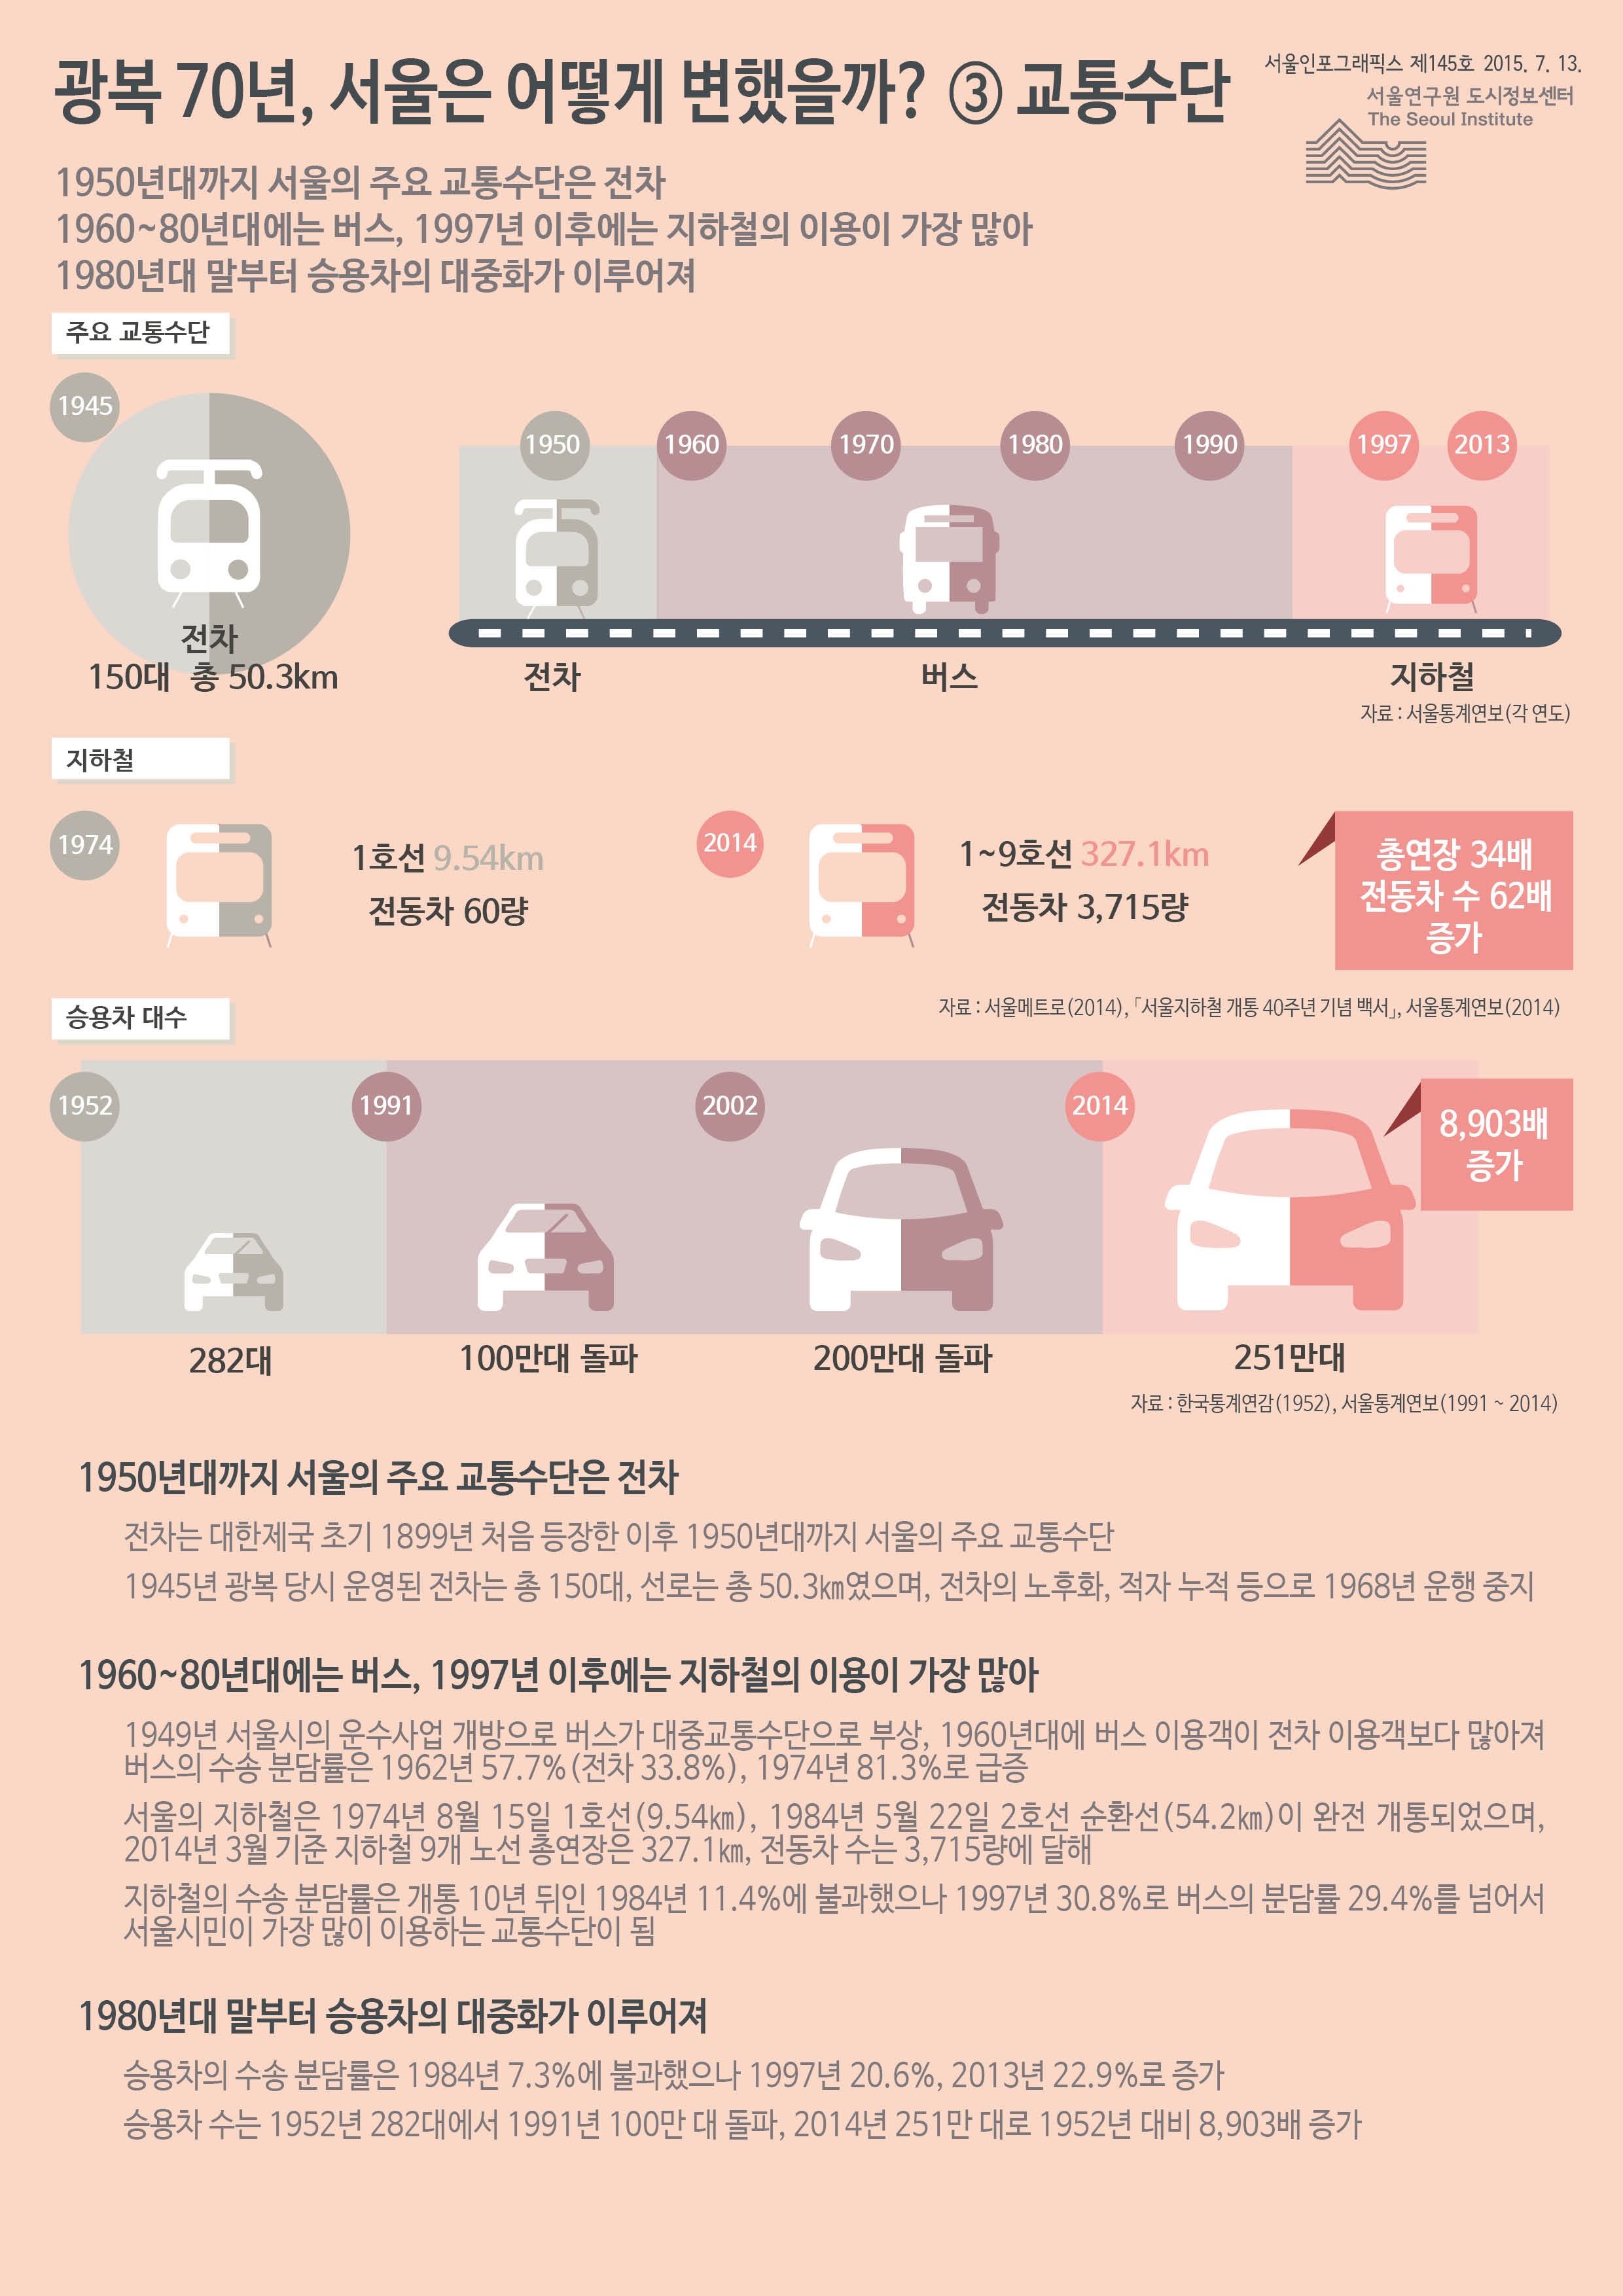 광복 70년, 서울은 어떻게 변했을까? ③ 교통수단 서울인포그래픽스 제145호 2015년 7월 13일 1950년대까지 서울의 주요 교통수단은 전차. 1960~80년대에는 버스, 1997년 이후에는 지하철의 이용이 가장 많음. 1980년대 말부터 승용차의 대중화가 이루어짐으로 정리될 수 있습니다. 인포그래픽으로 제공되는 그래픽은 하단에 표로 자세히 제공됩니다.